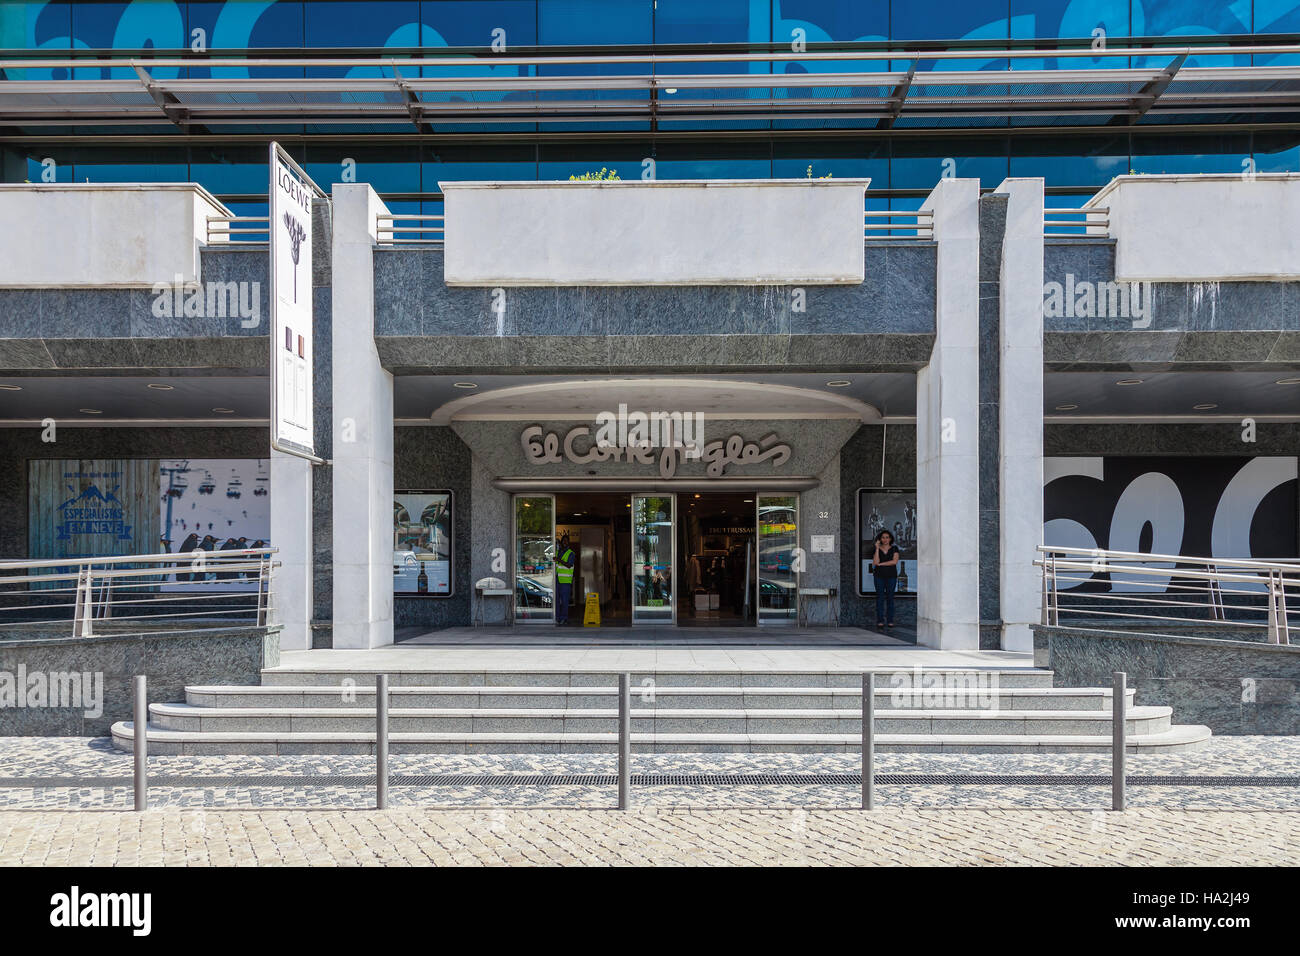 Une entrée de l'El Corte Ingles, un centre commercial haut de gamme d'une société de vente au détail à l'échelle mondiale, près du parc Eduardo VII. Banque D'Images